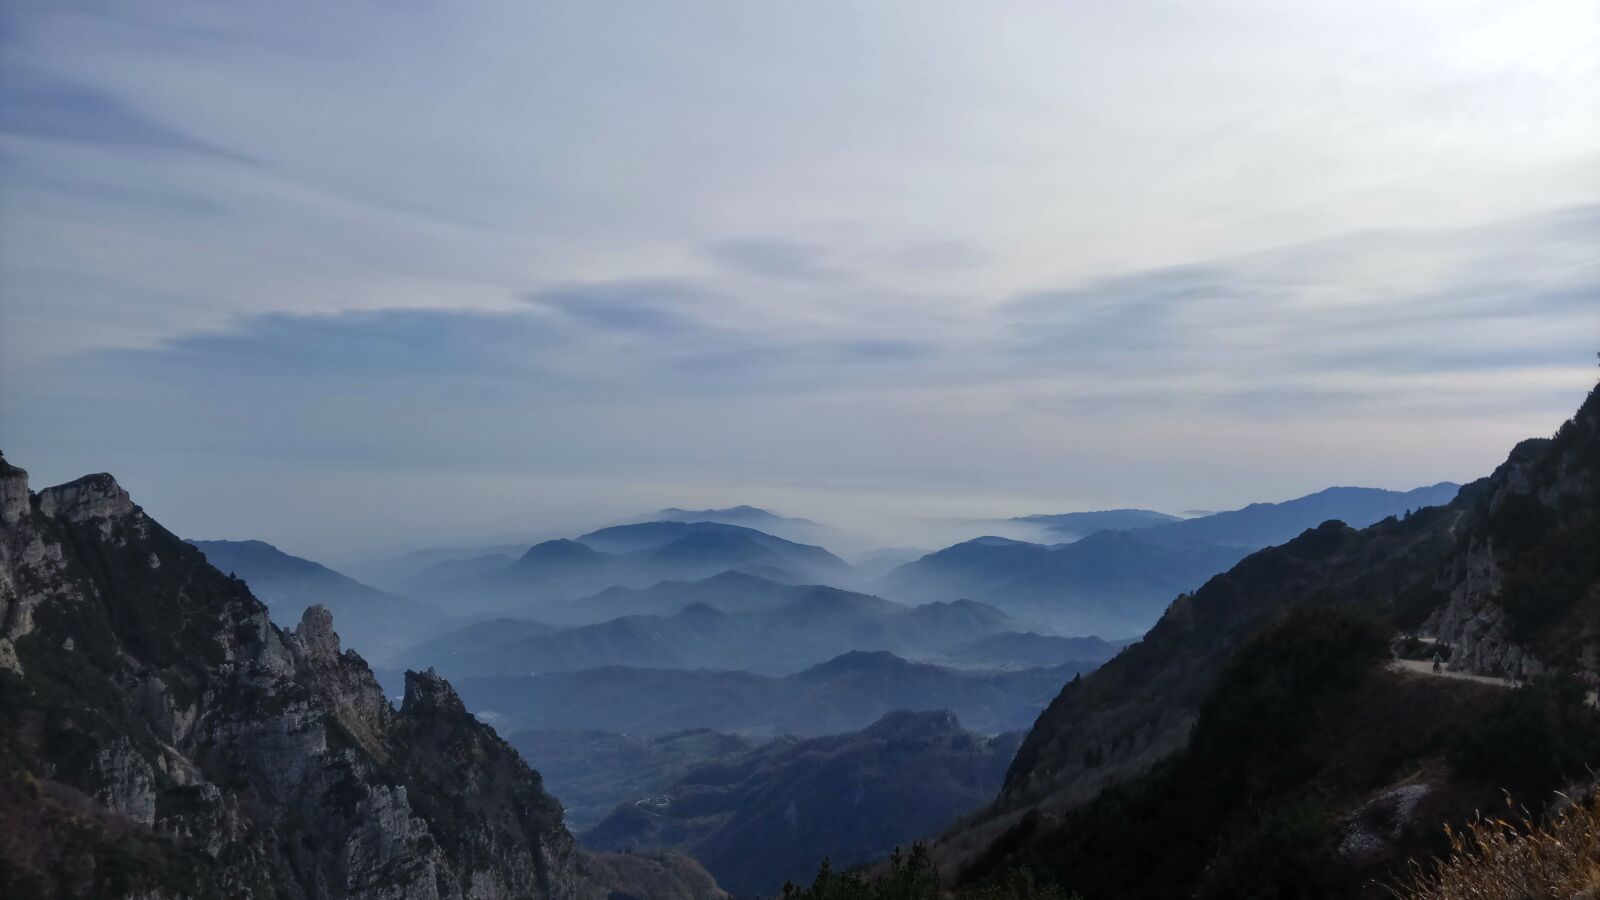 Xiaomi Redmi Pro sample photo. Valli del pasubio, mountain photography